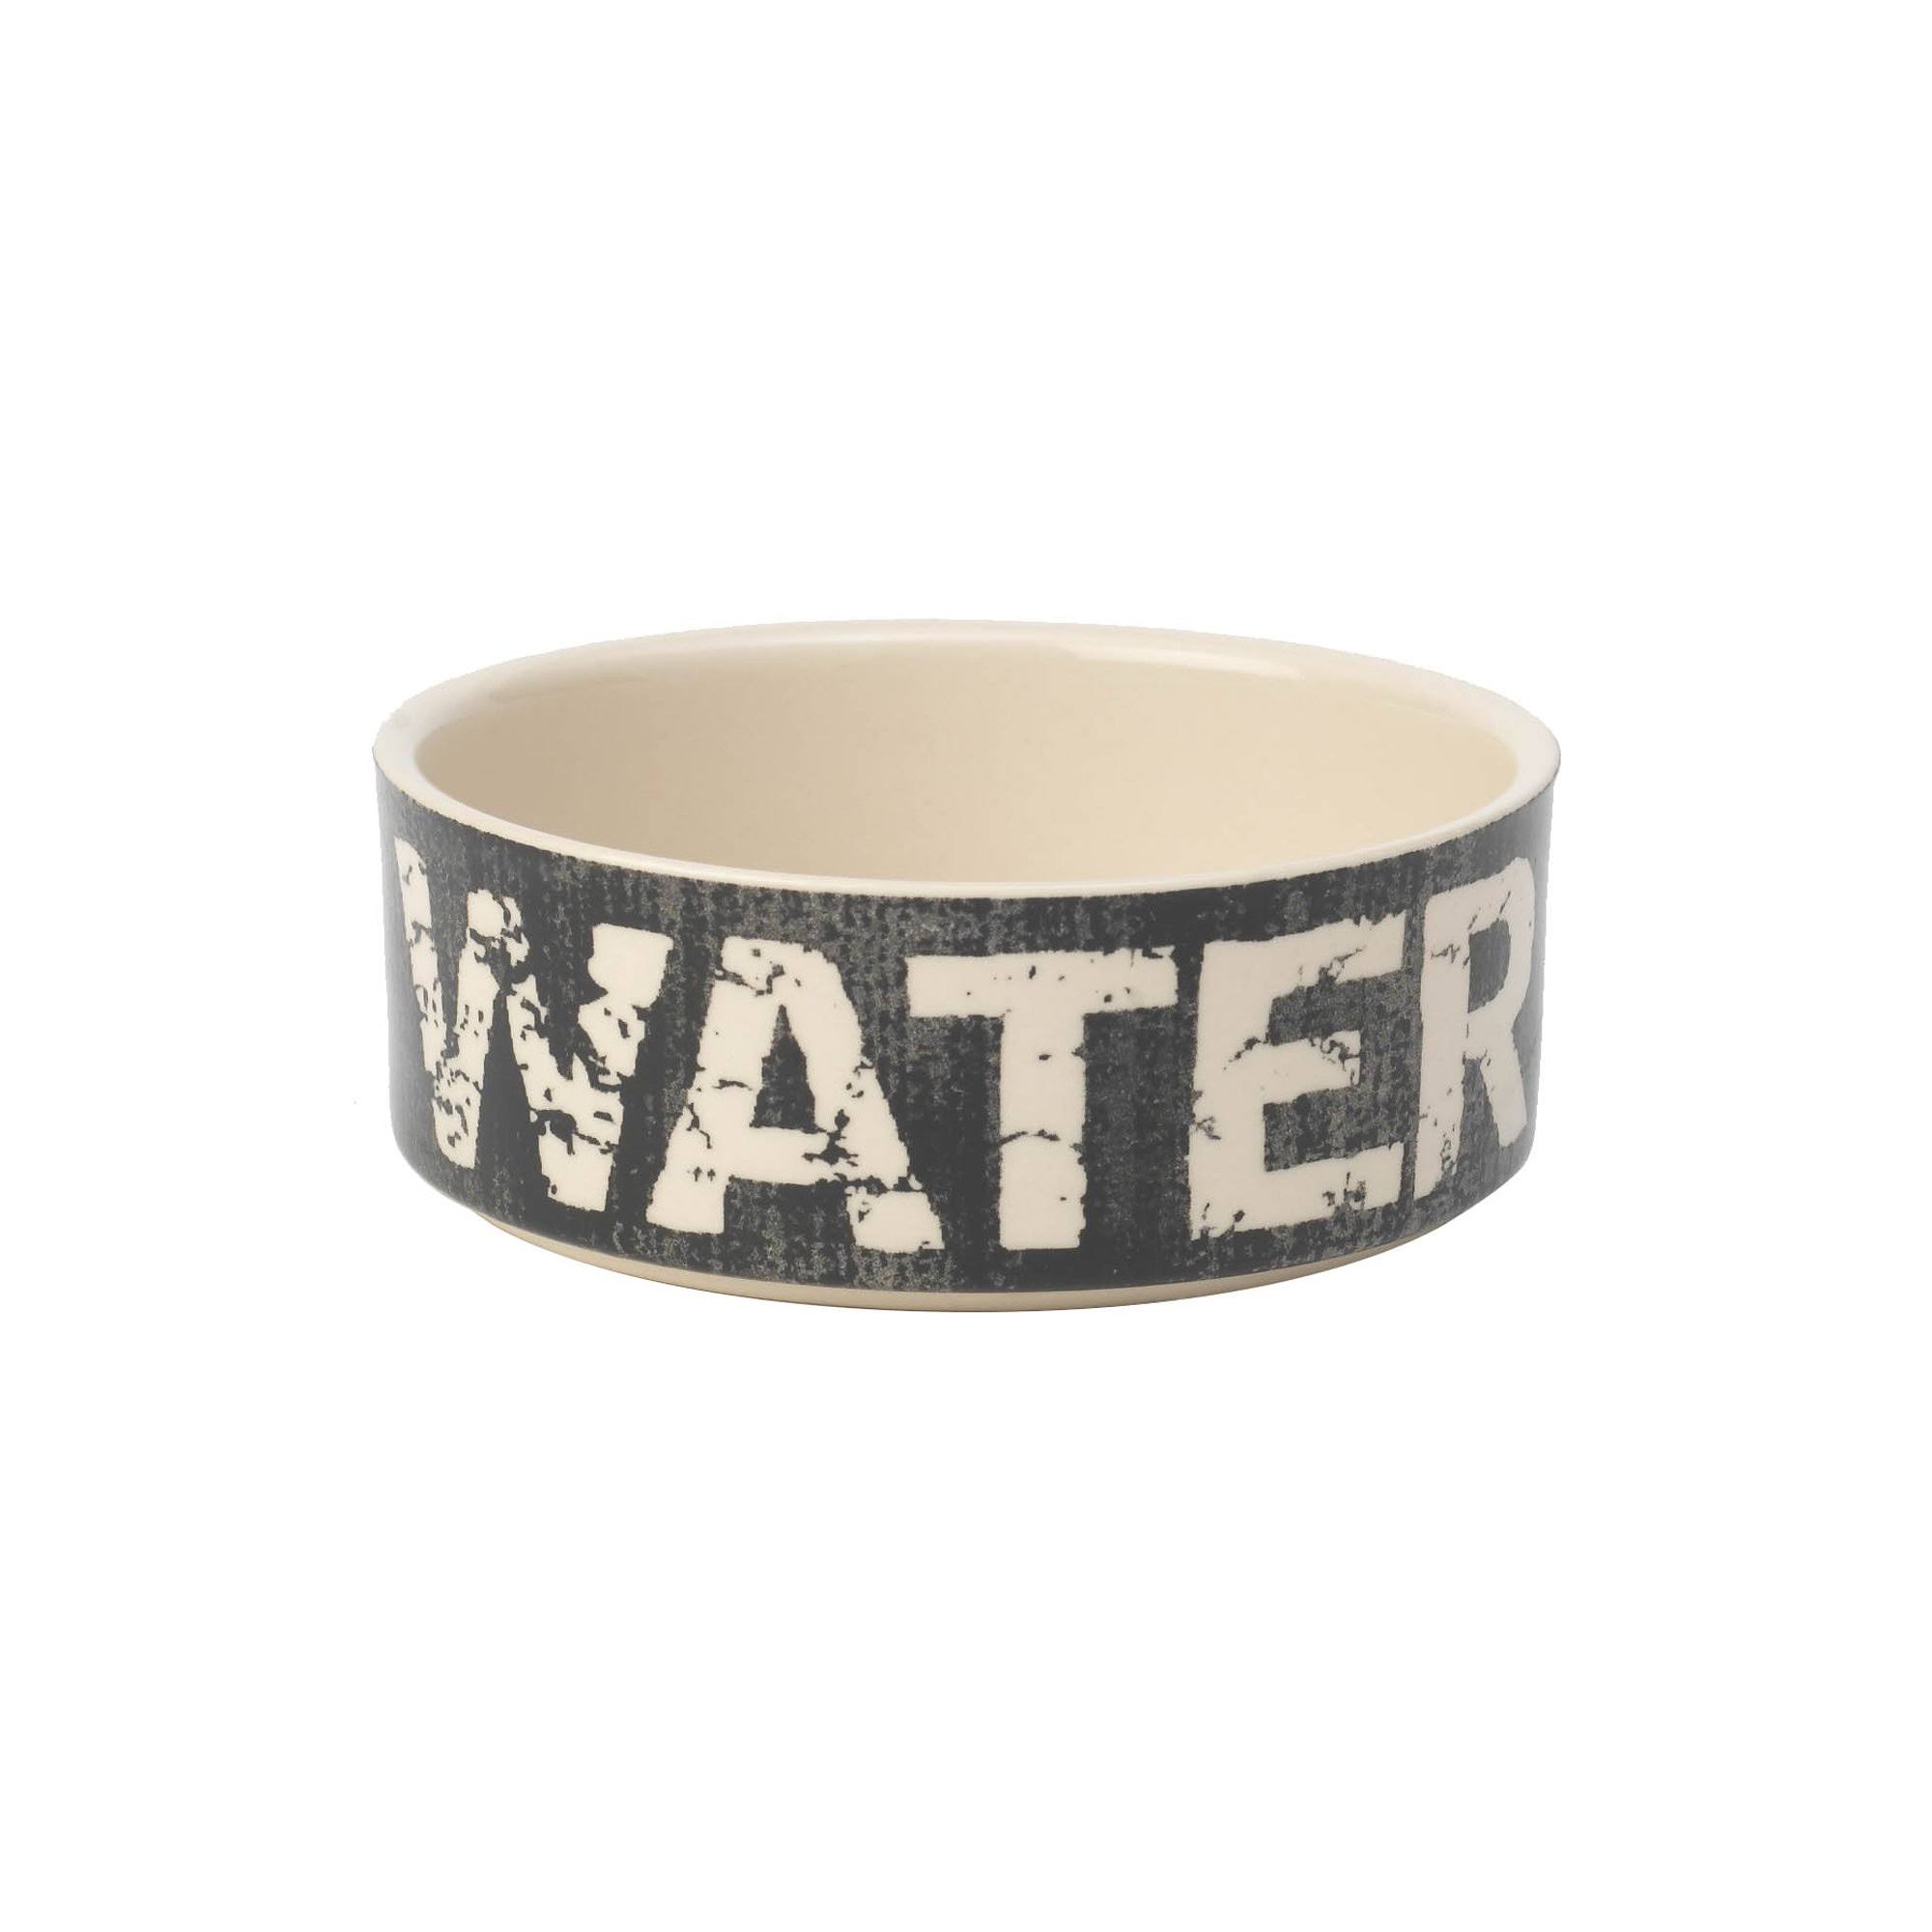 Petrageous Vintage Designs 2-Cup Pet Water Bowl